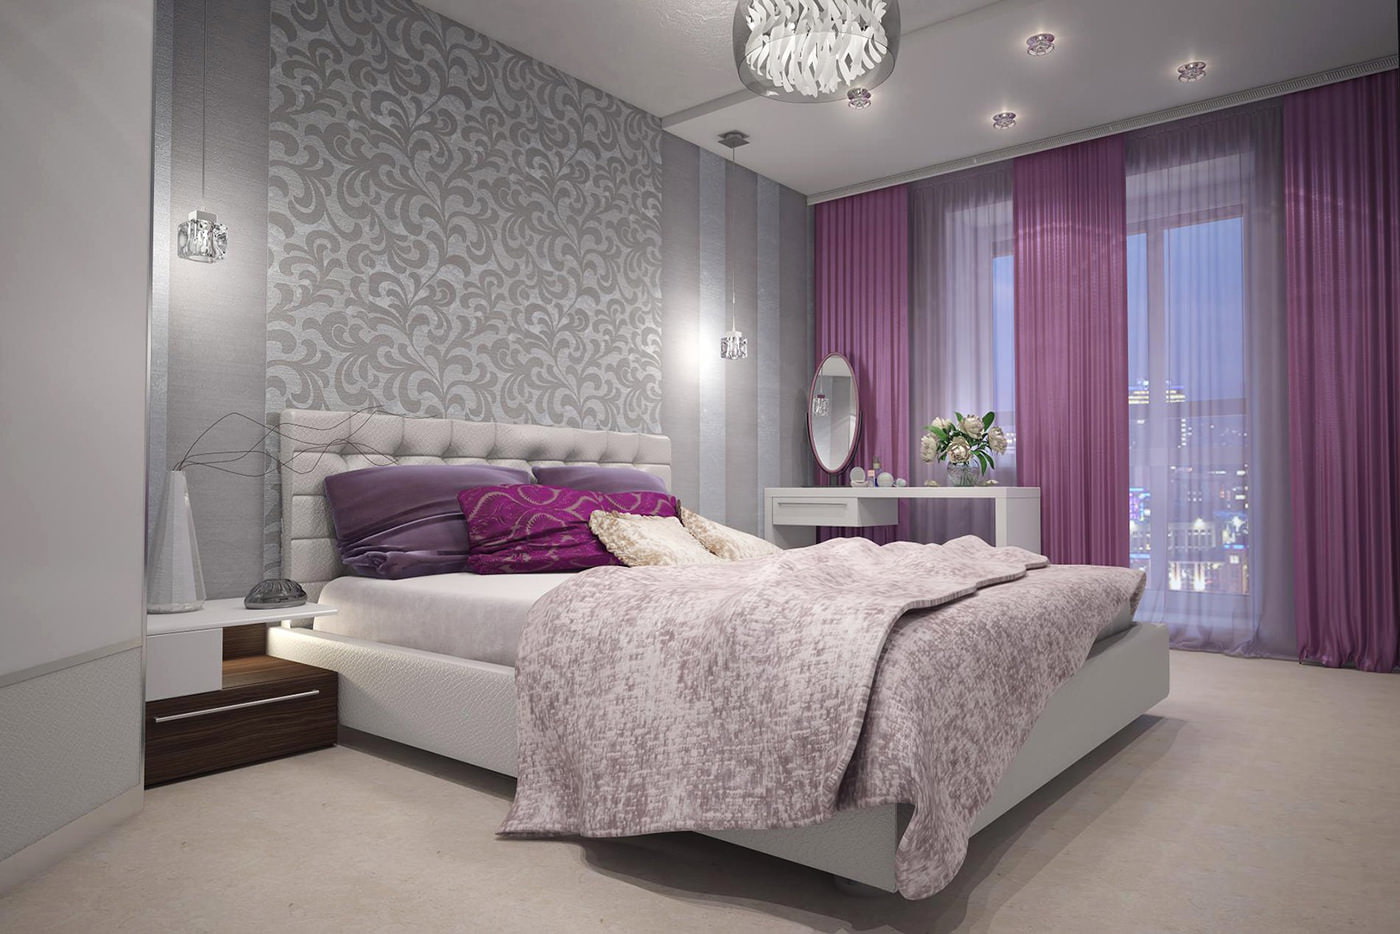 cortinas roxas no design do quarto com papel de parede cinza